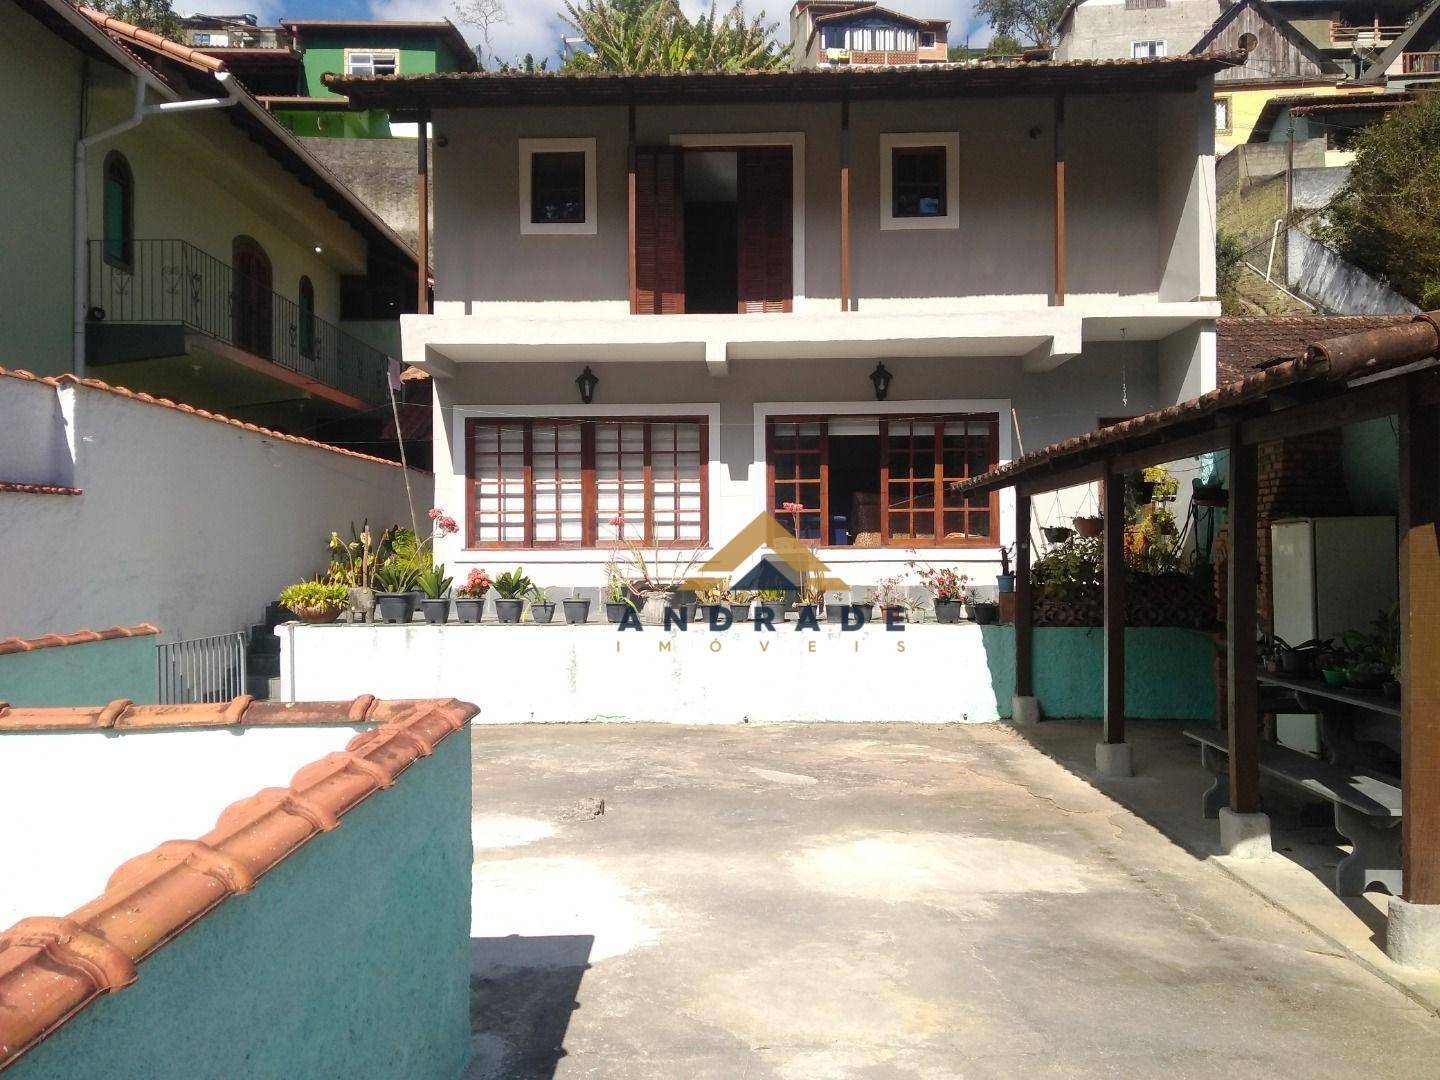 Casa à venda em Pimenteiras, Teresópolis - RJ - Foto 2